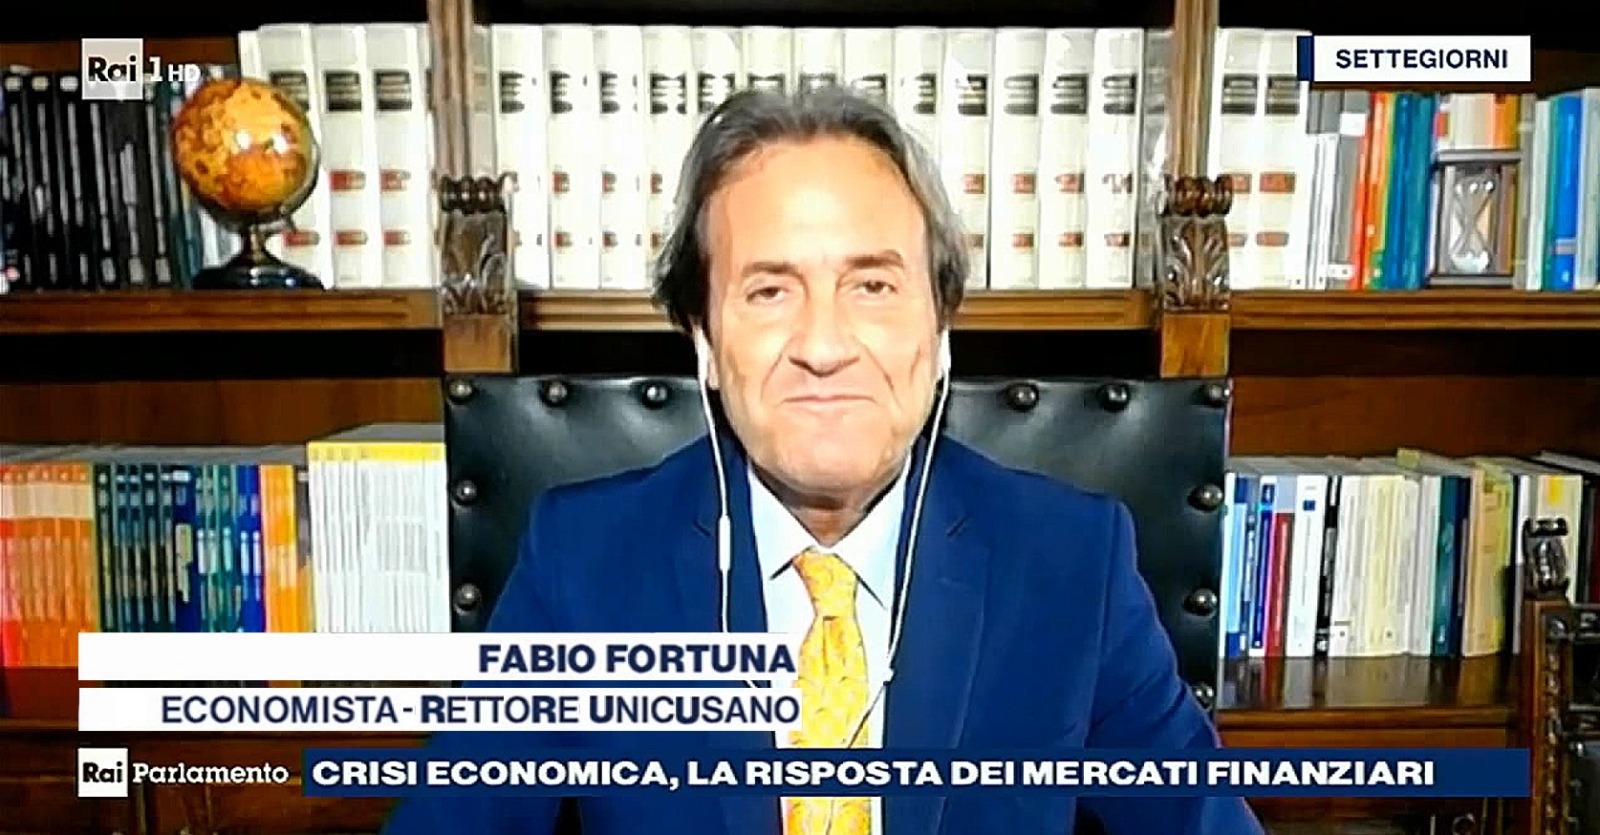 Fabio Fortuna a Raiparlamento Settegiorni del 27 03 2021